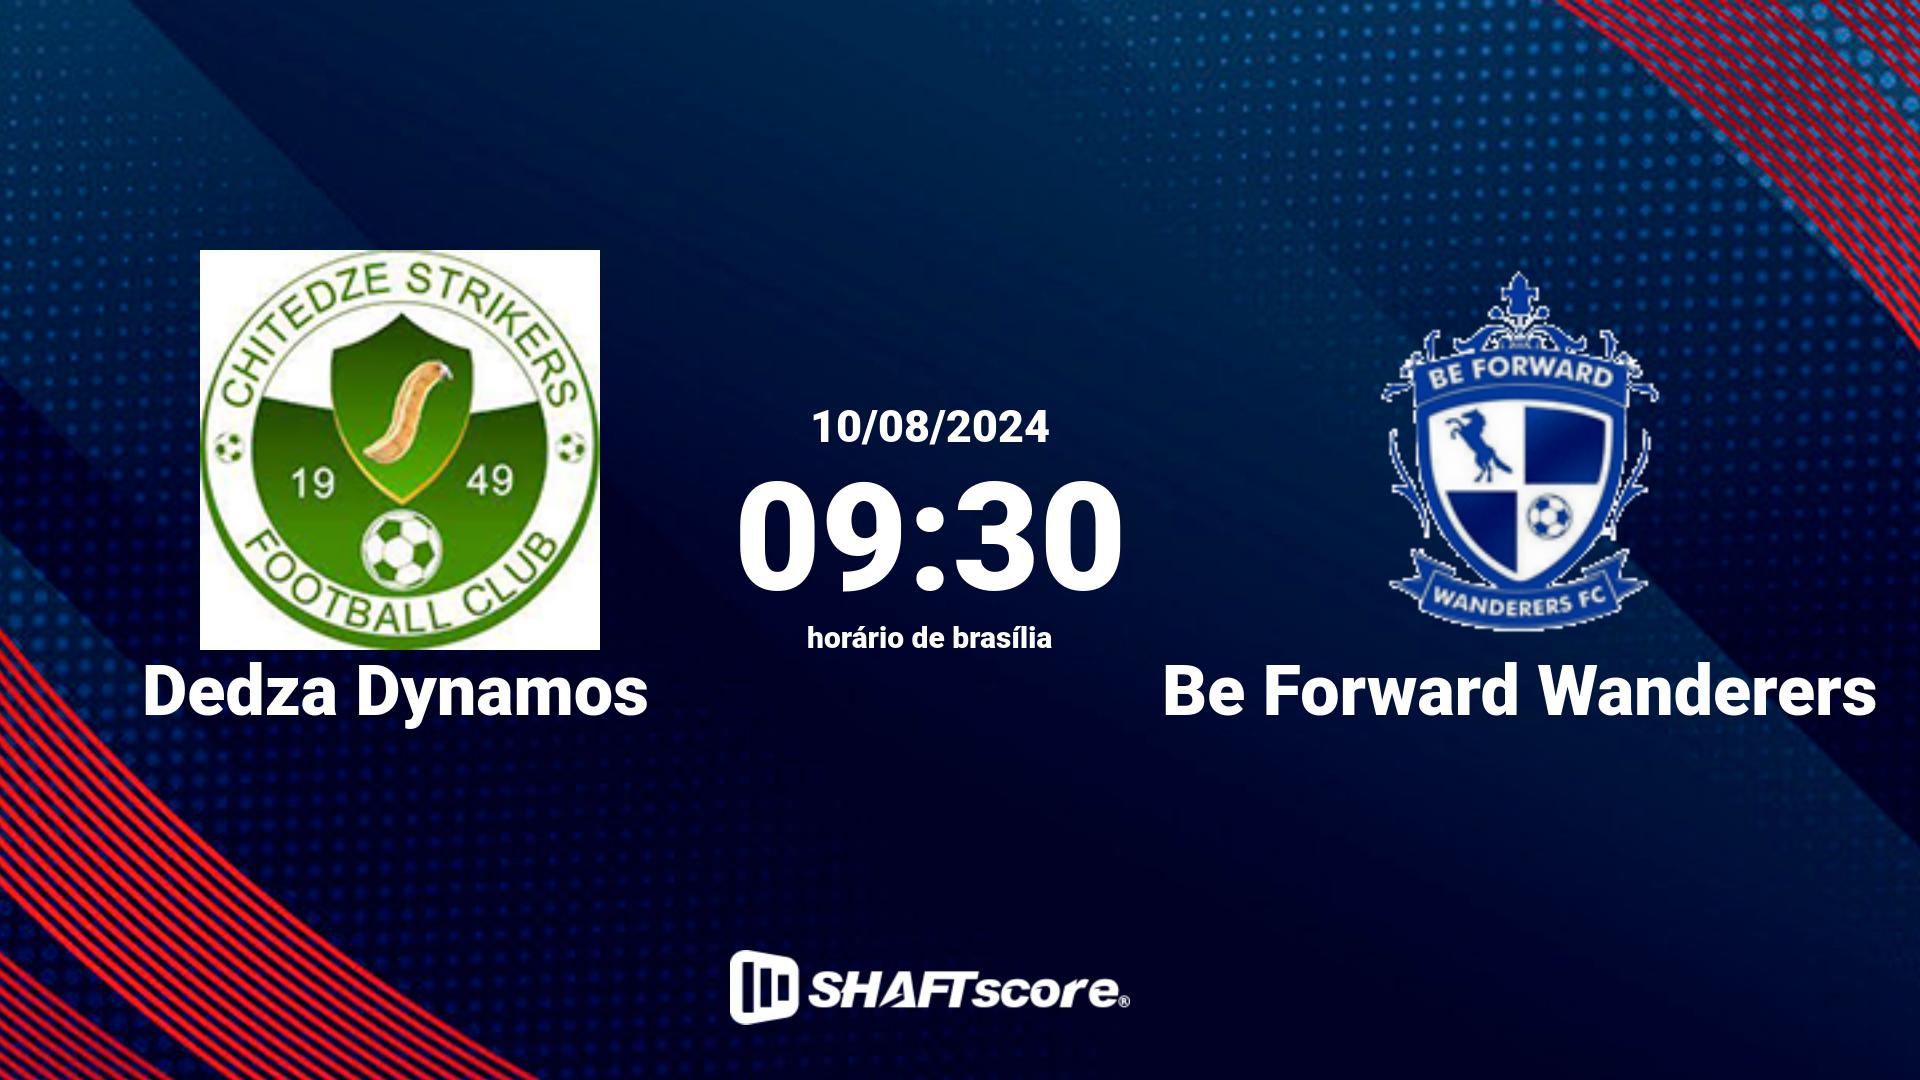 Estatísticas do jogo Dedza Dynamos vs Be Forward Wanderers 10.08 09:30